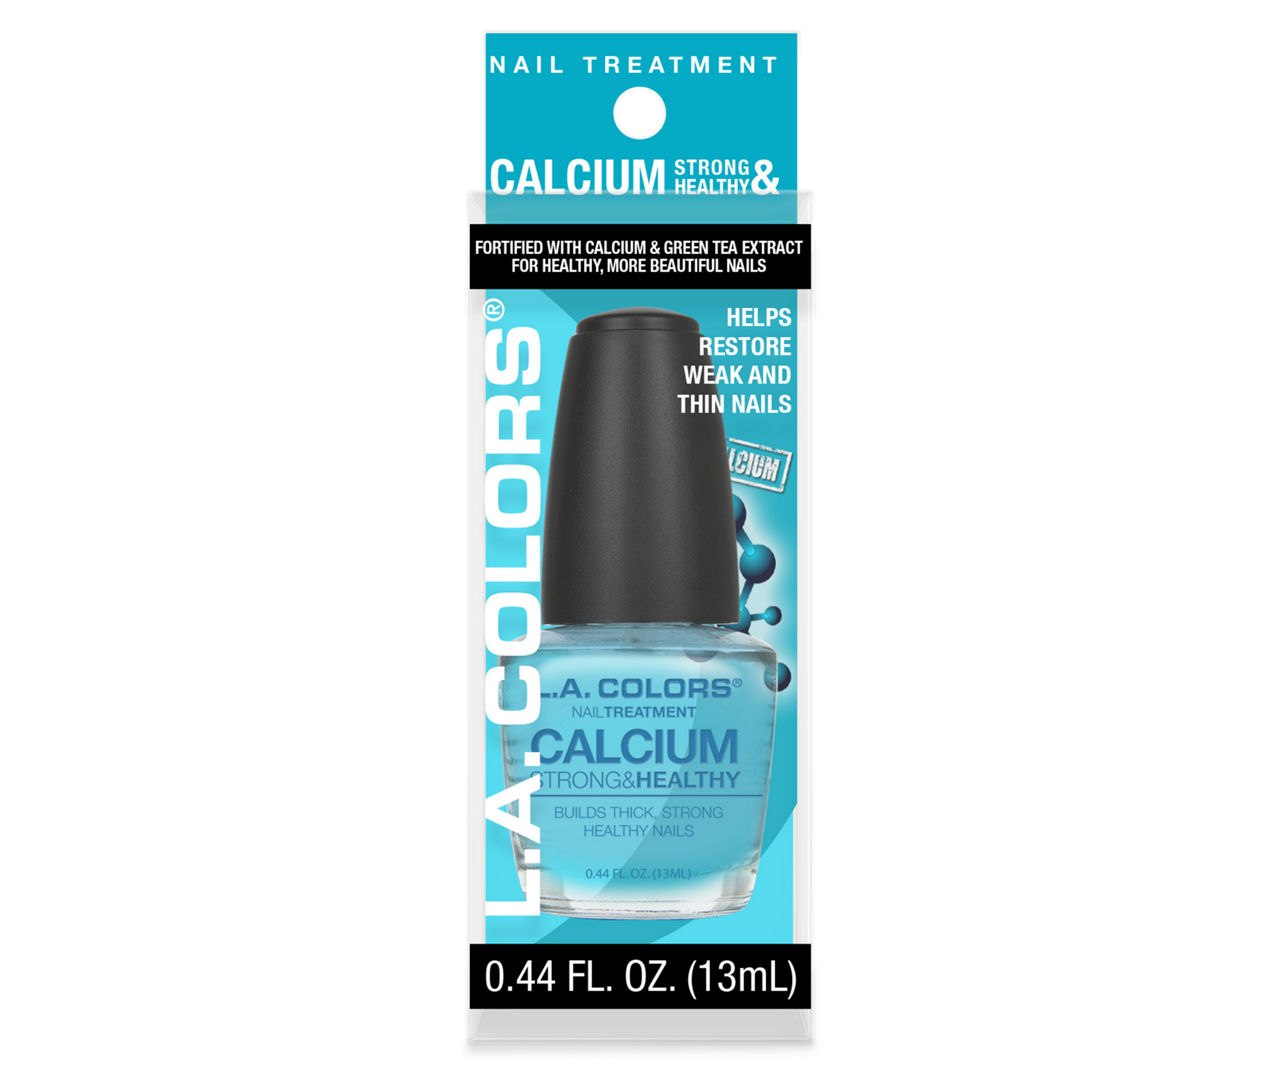 LA Colors Calcium Nail Treatment